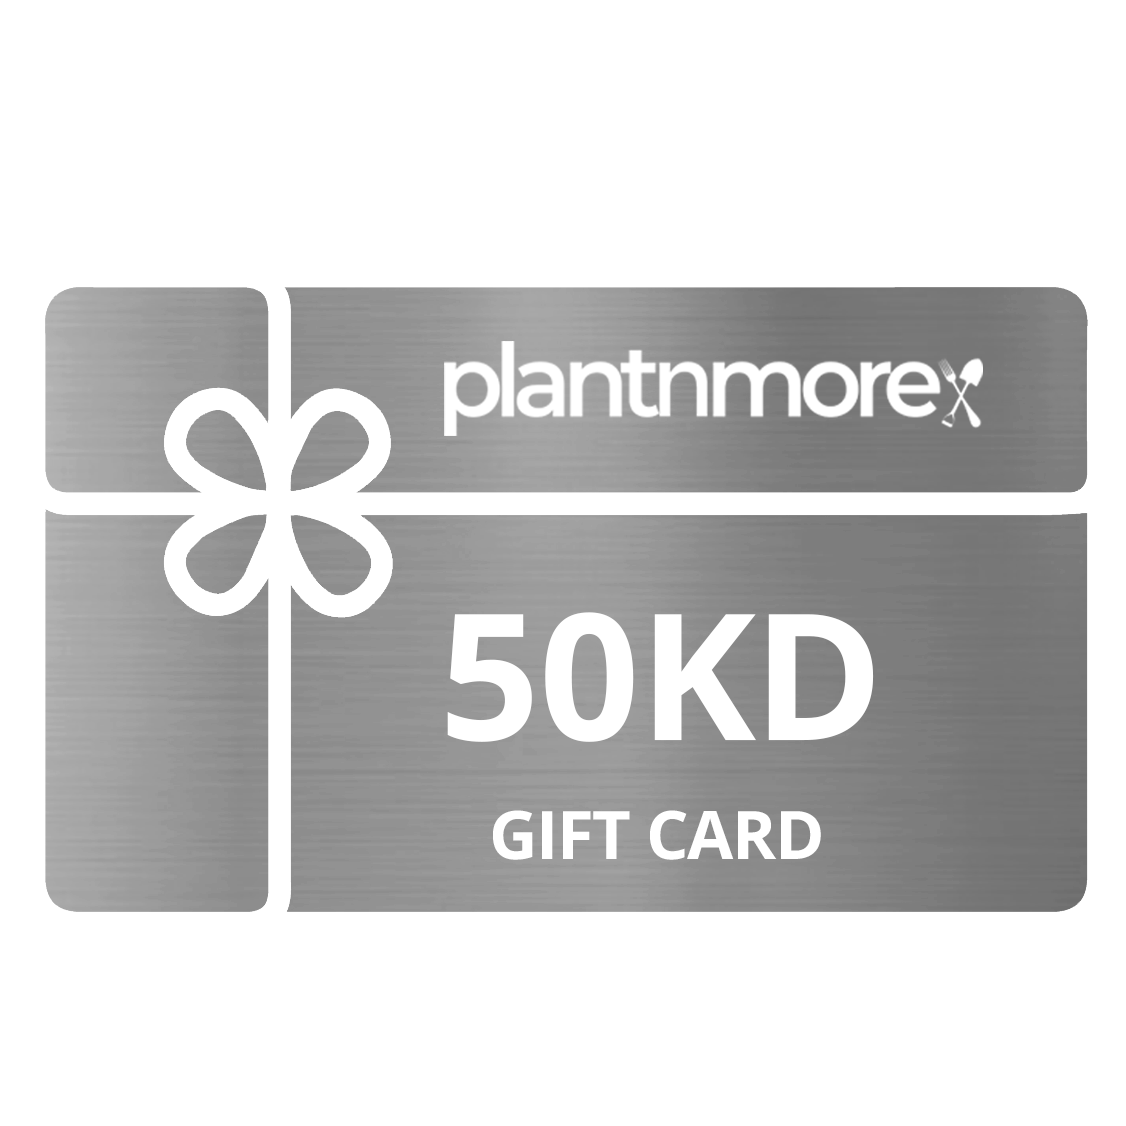 50KD Gift Card • قسيمة شرائية - plantnmore